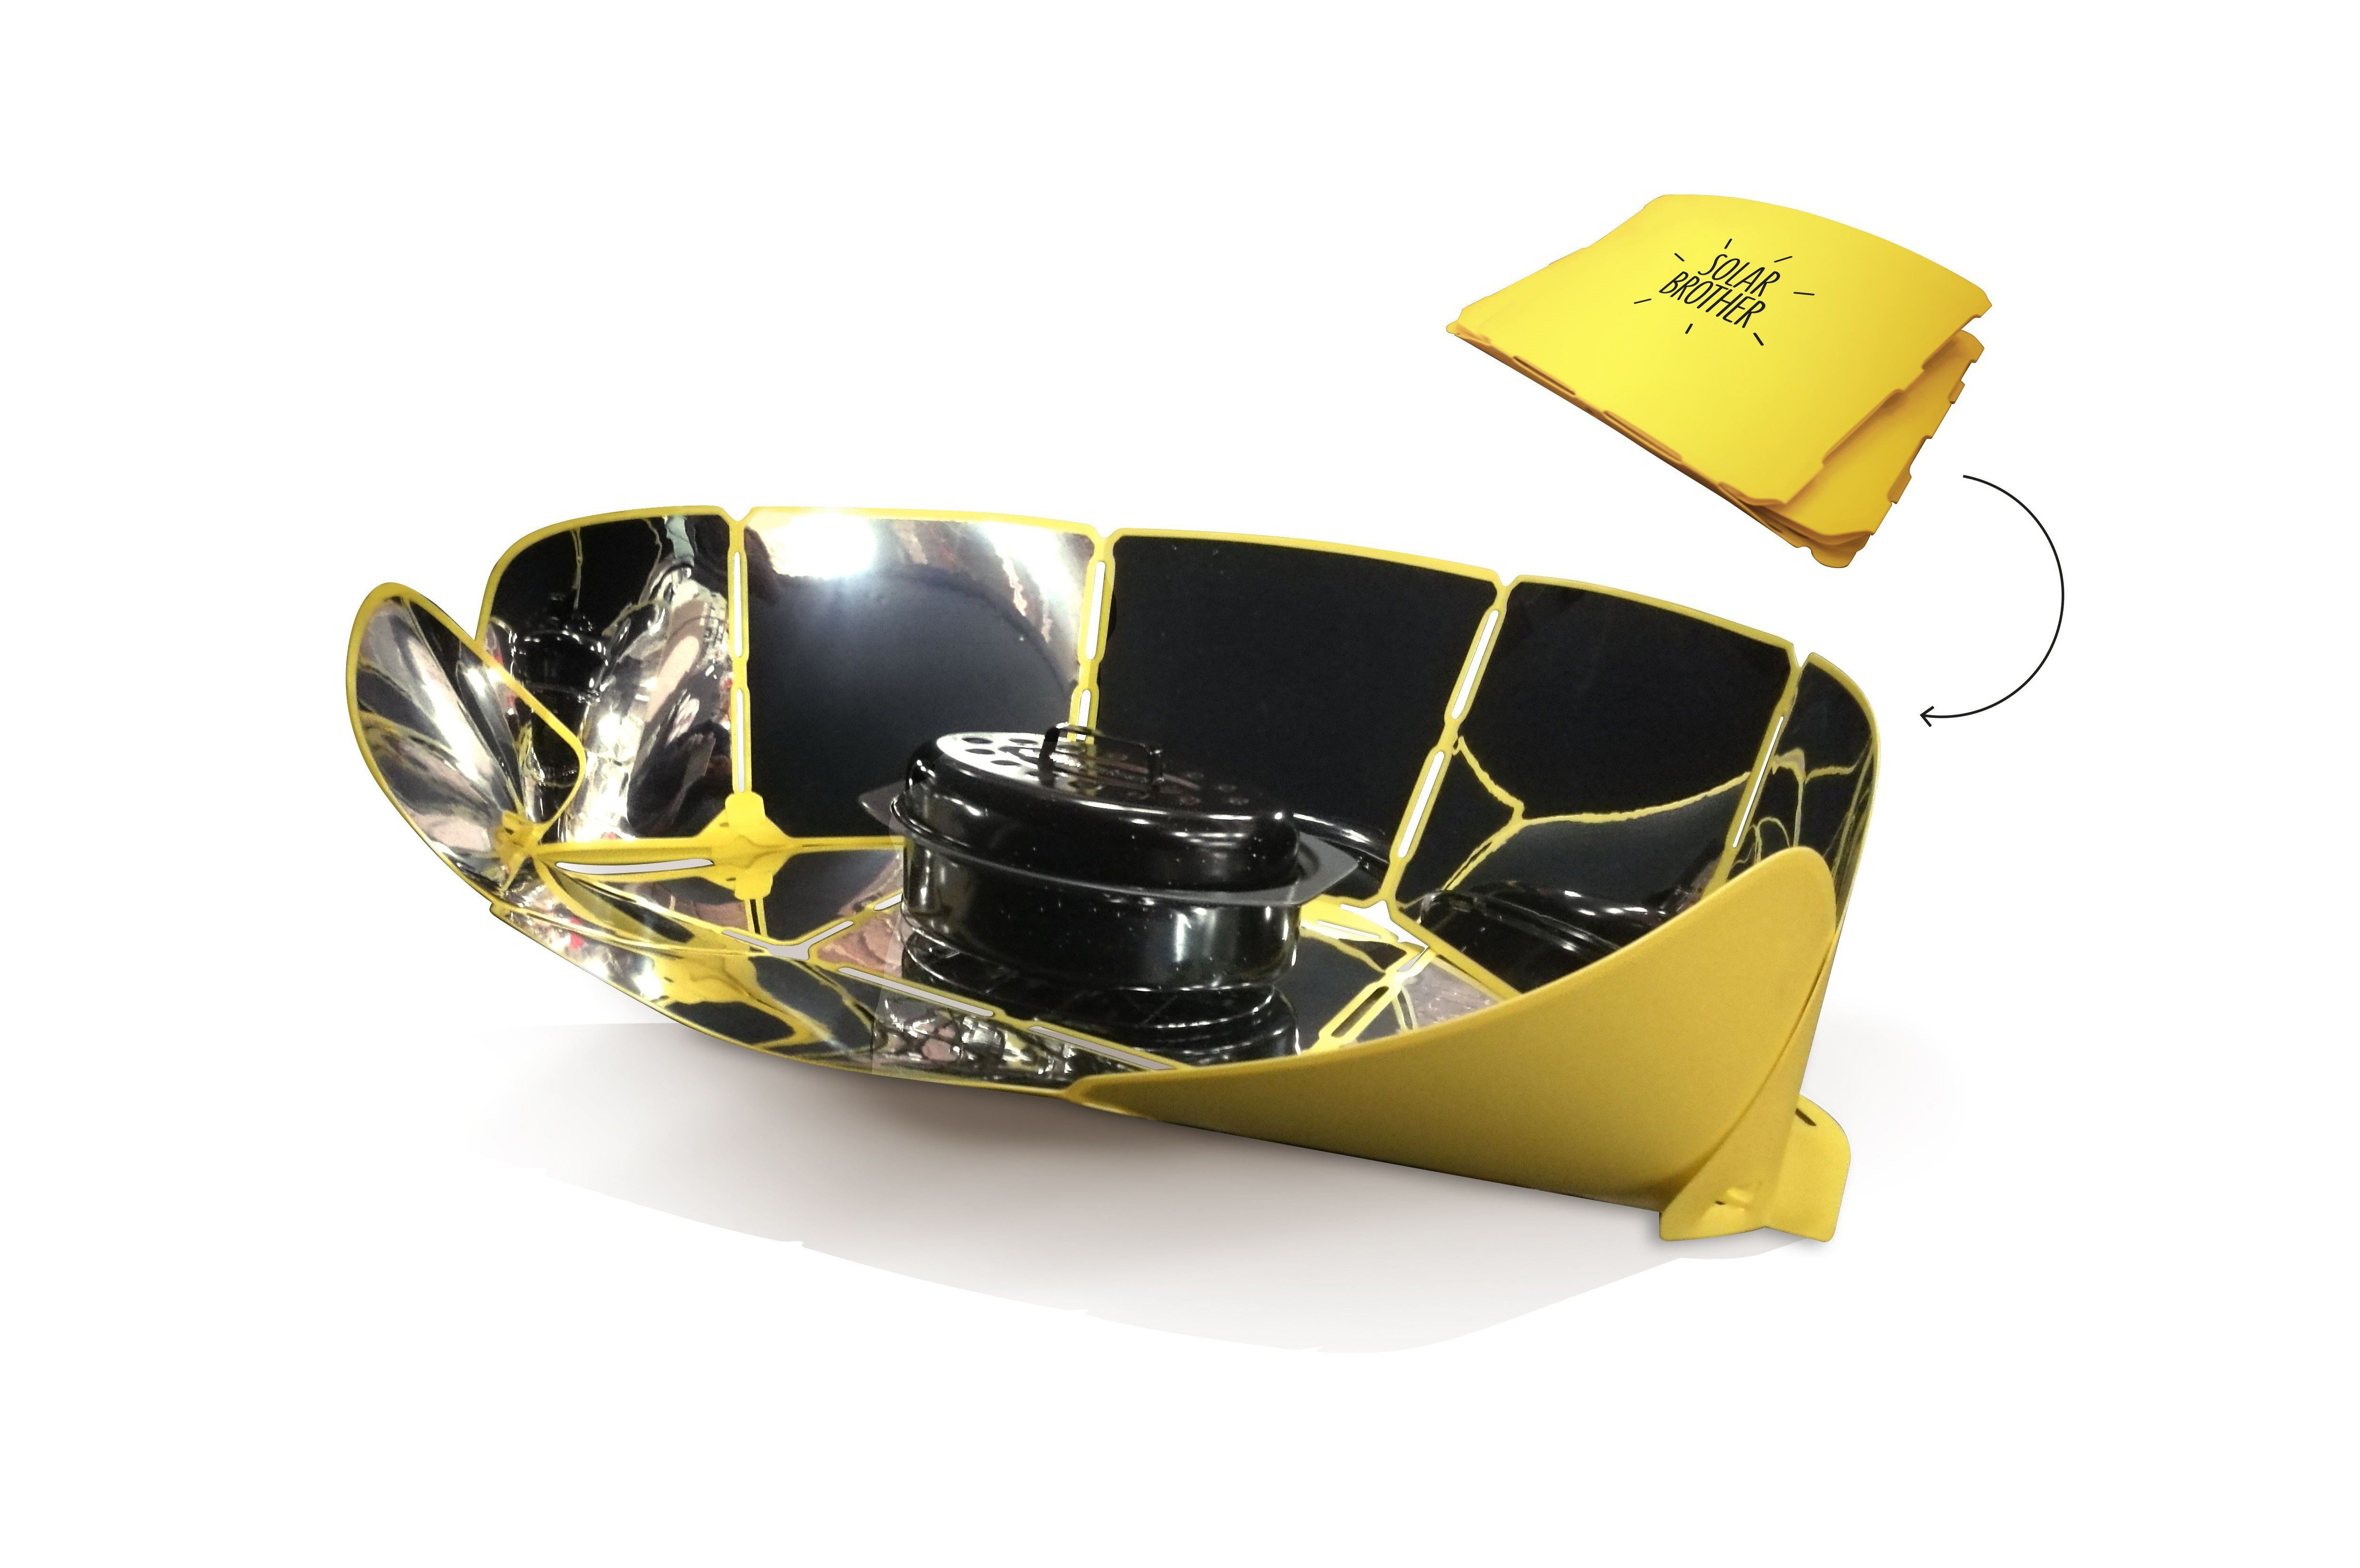 doit avoir pour pique-nique camping Fondchy cuiseur solaire portatif four solaire poêle solaire grille solaire